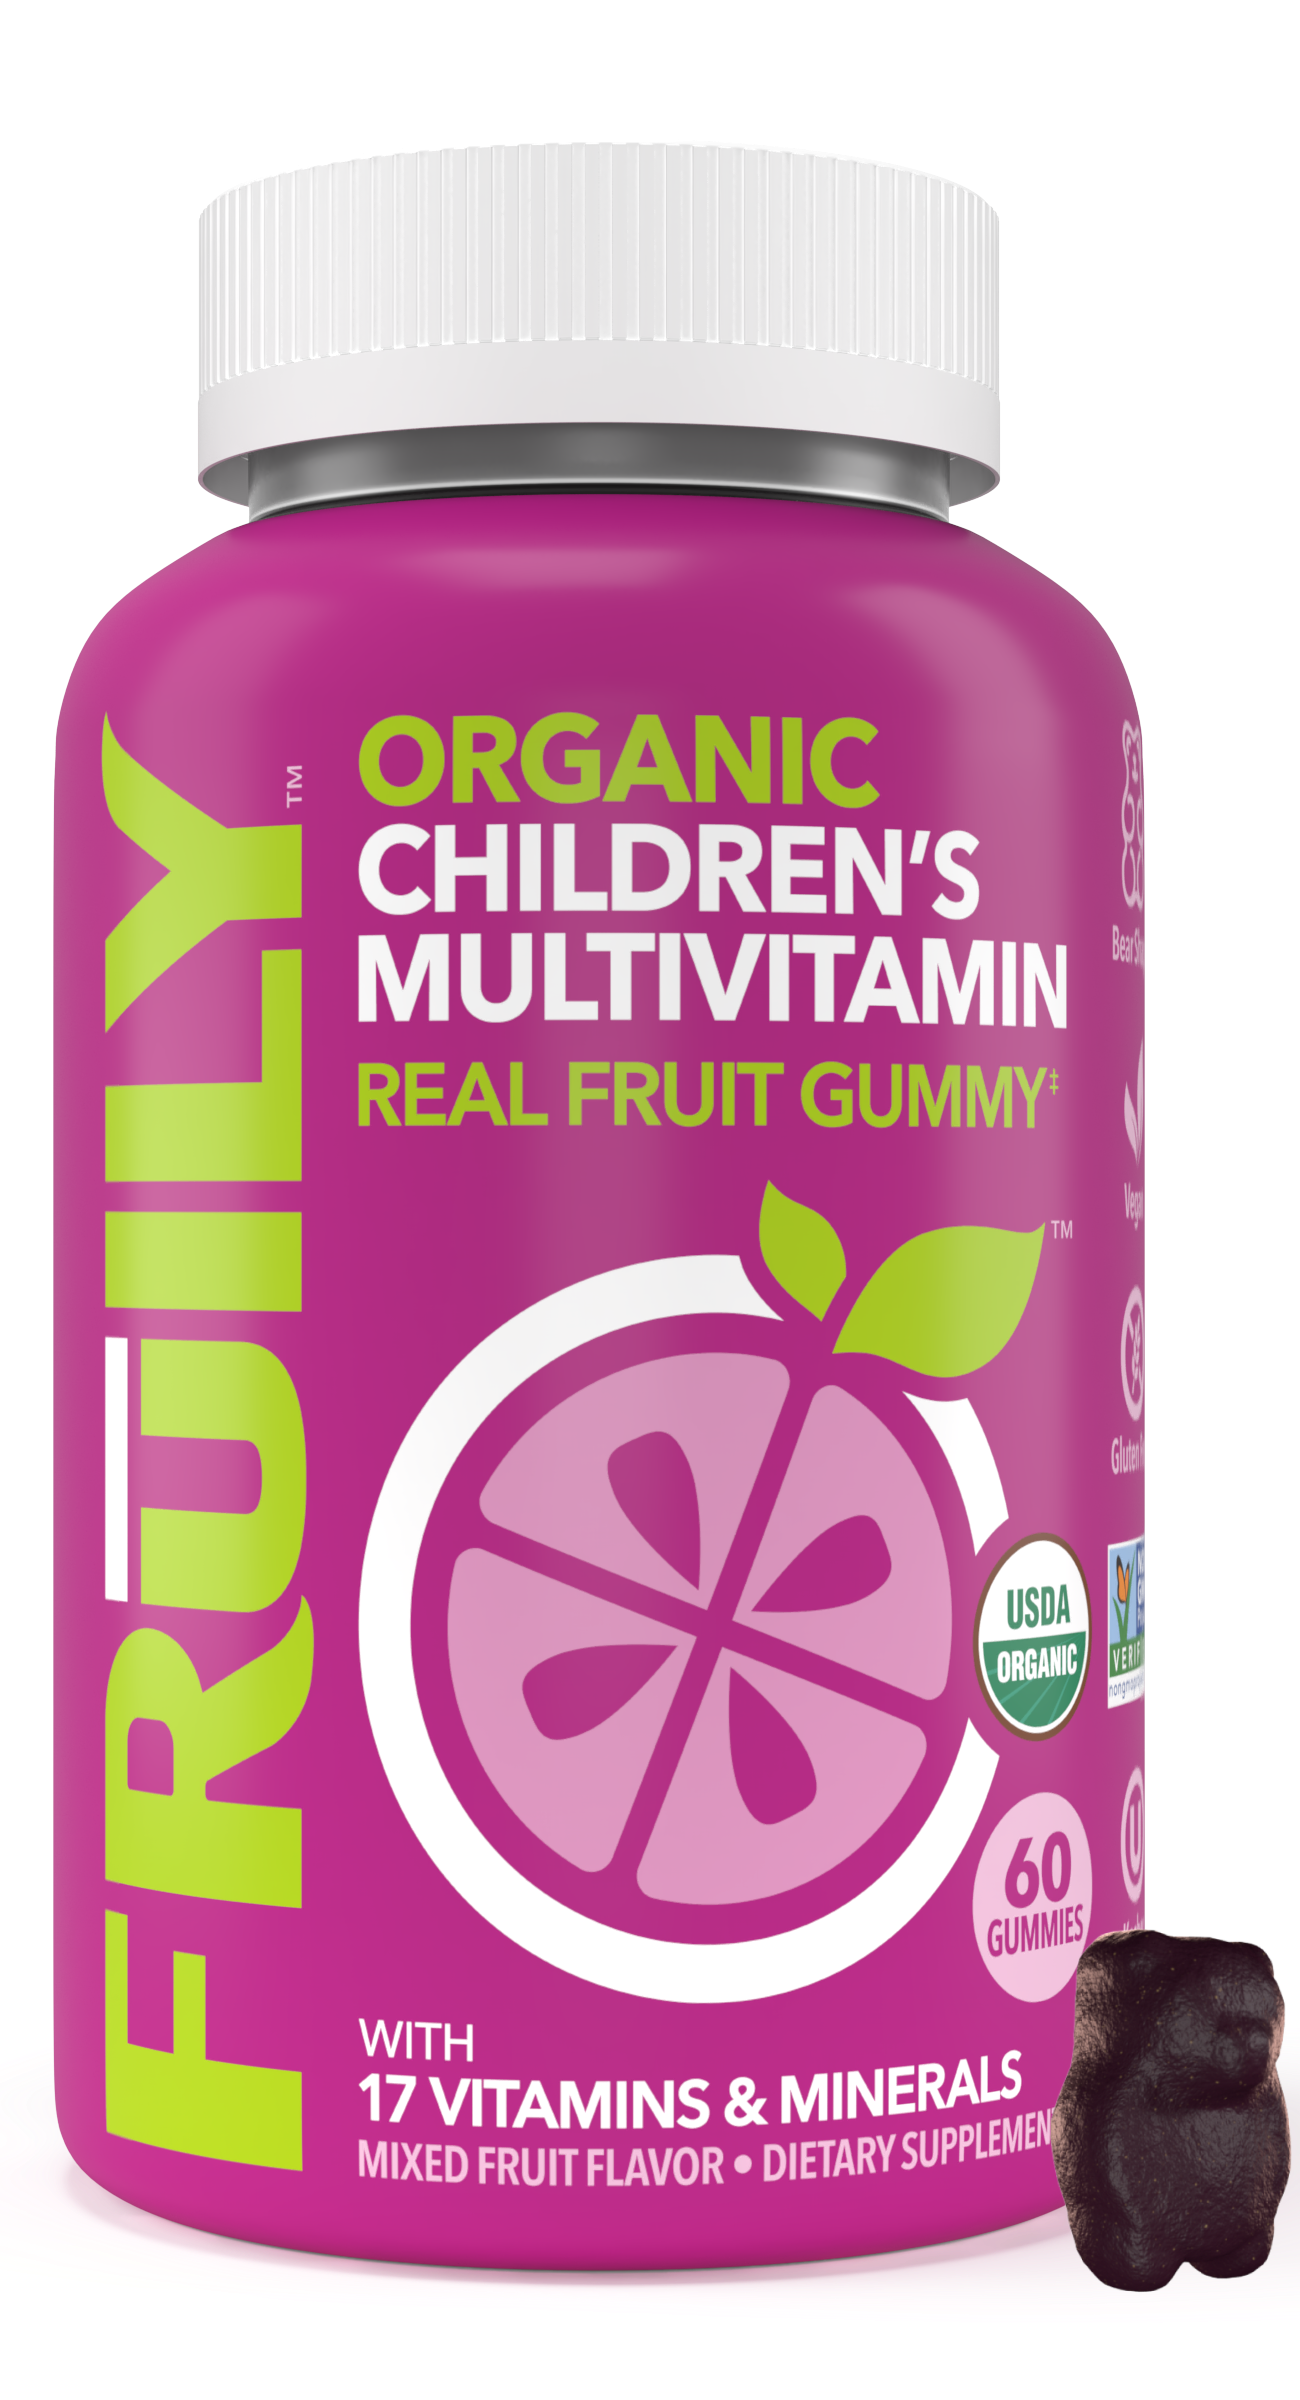 Children's Multivitamin